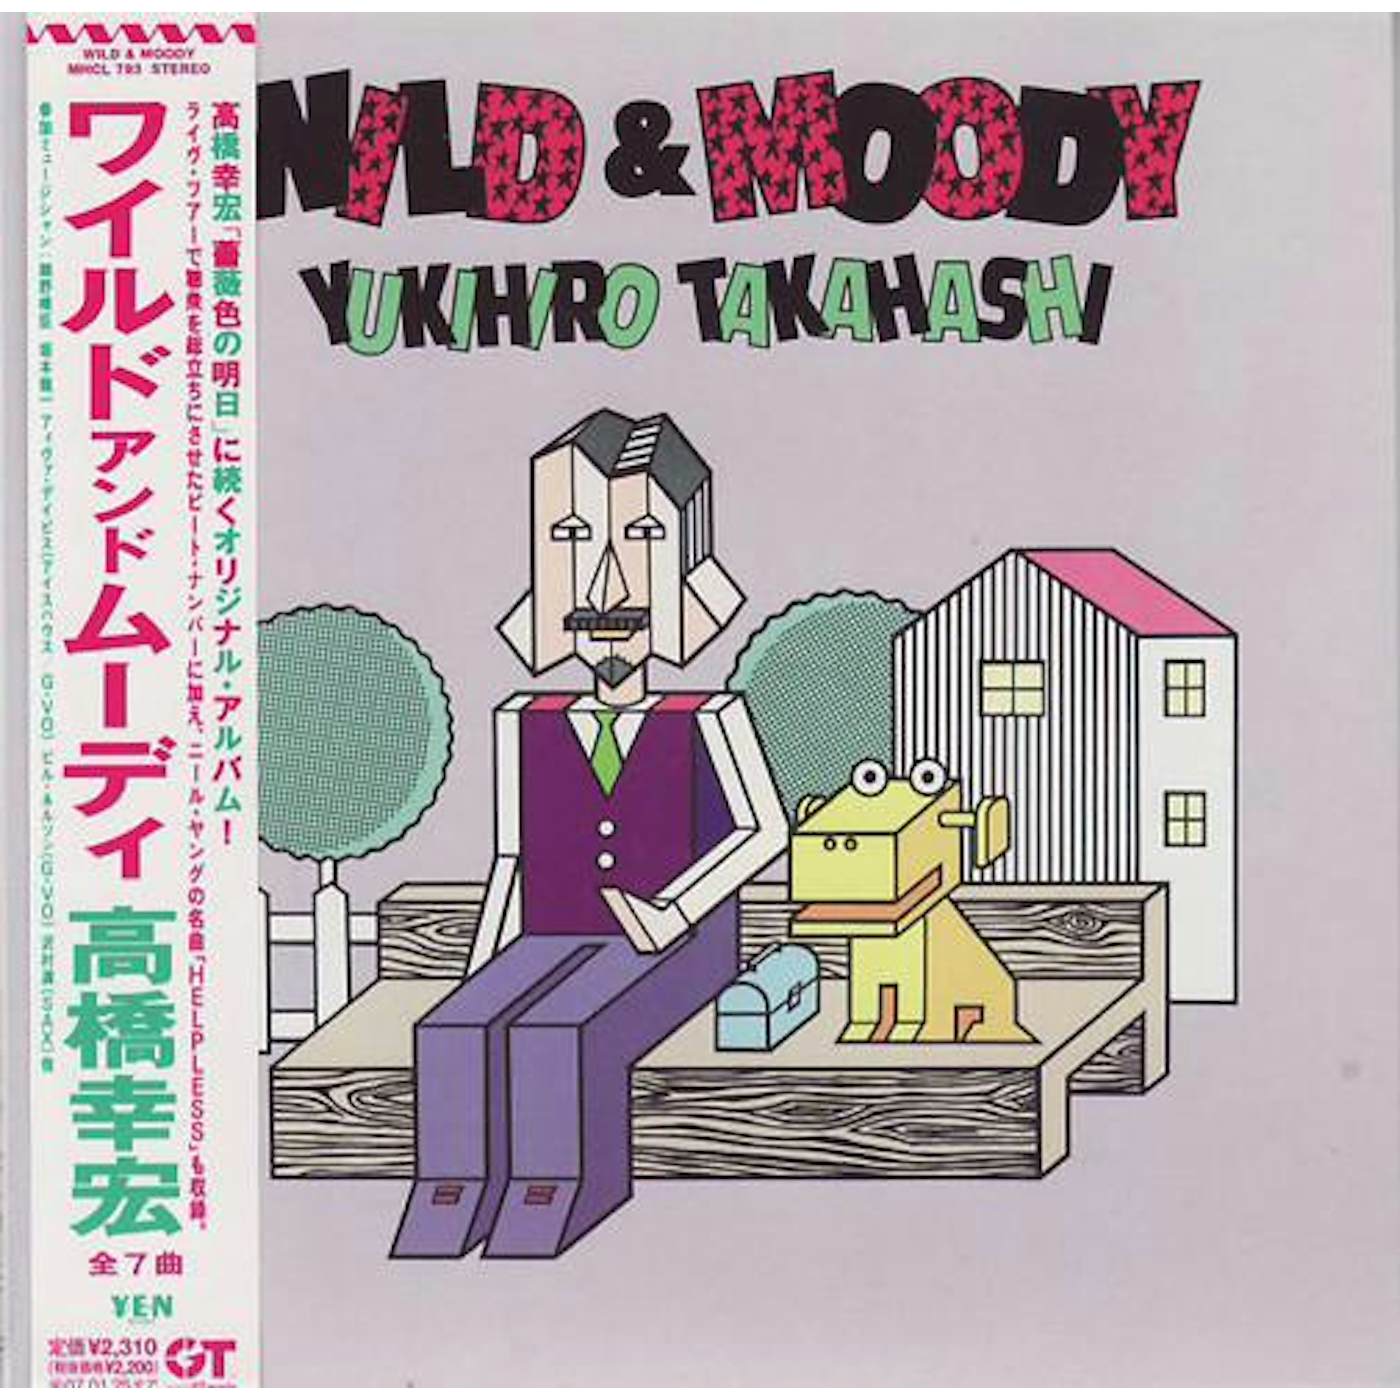 Yukihiro Takahashi WILD & MOODY (MINI LP SLEEVE) CD